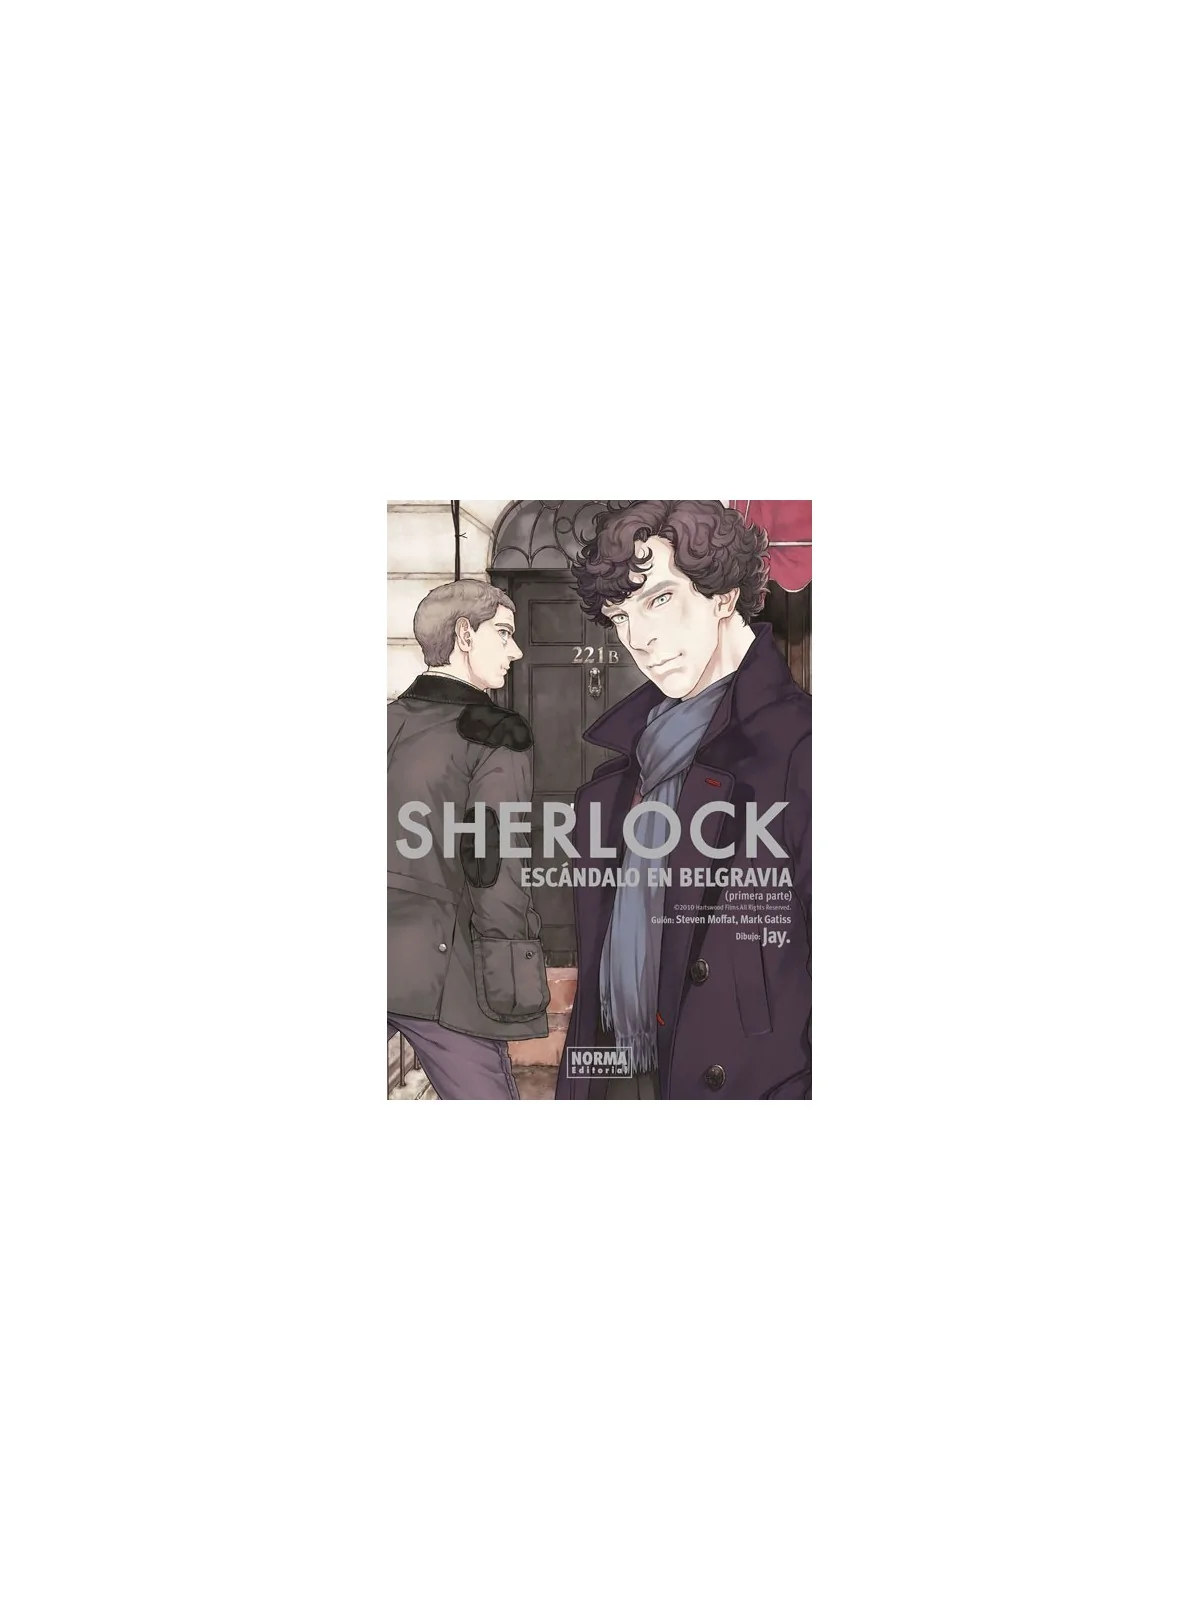 Comprar Sherlock: Escándalo en Belgravia (Primera Parte) barato al mej